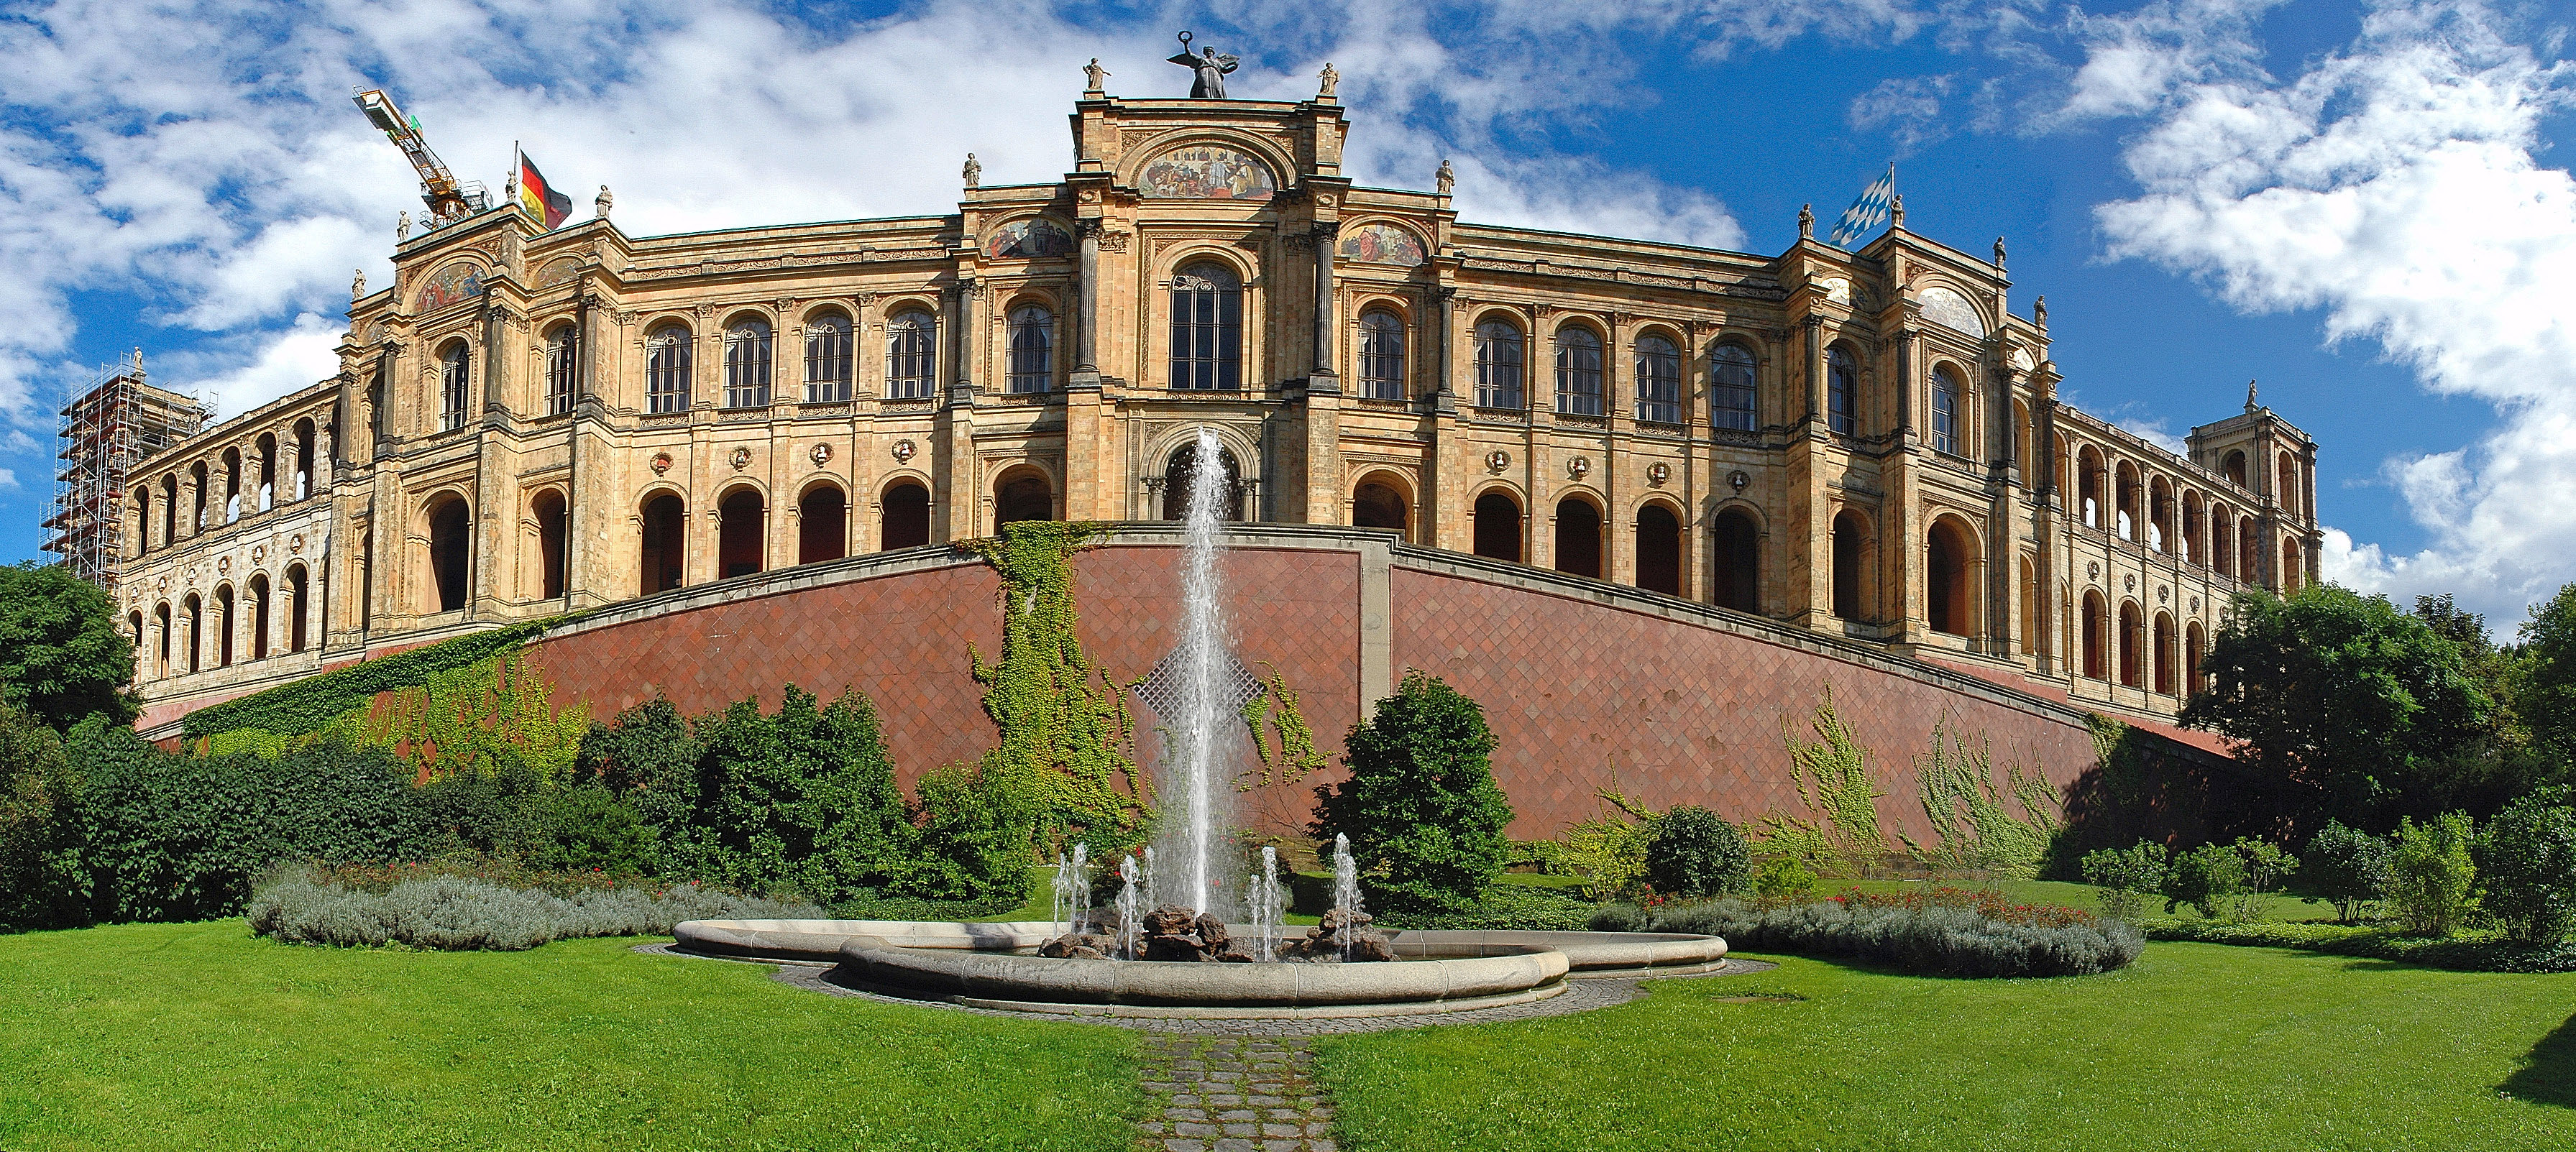 Maximilianeum - Frontseite - Panorama